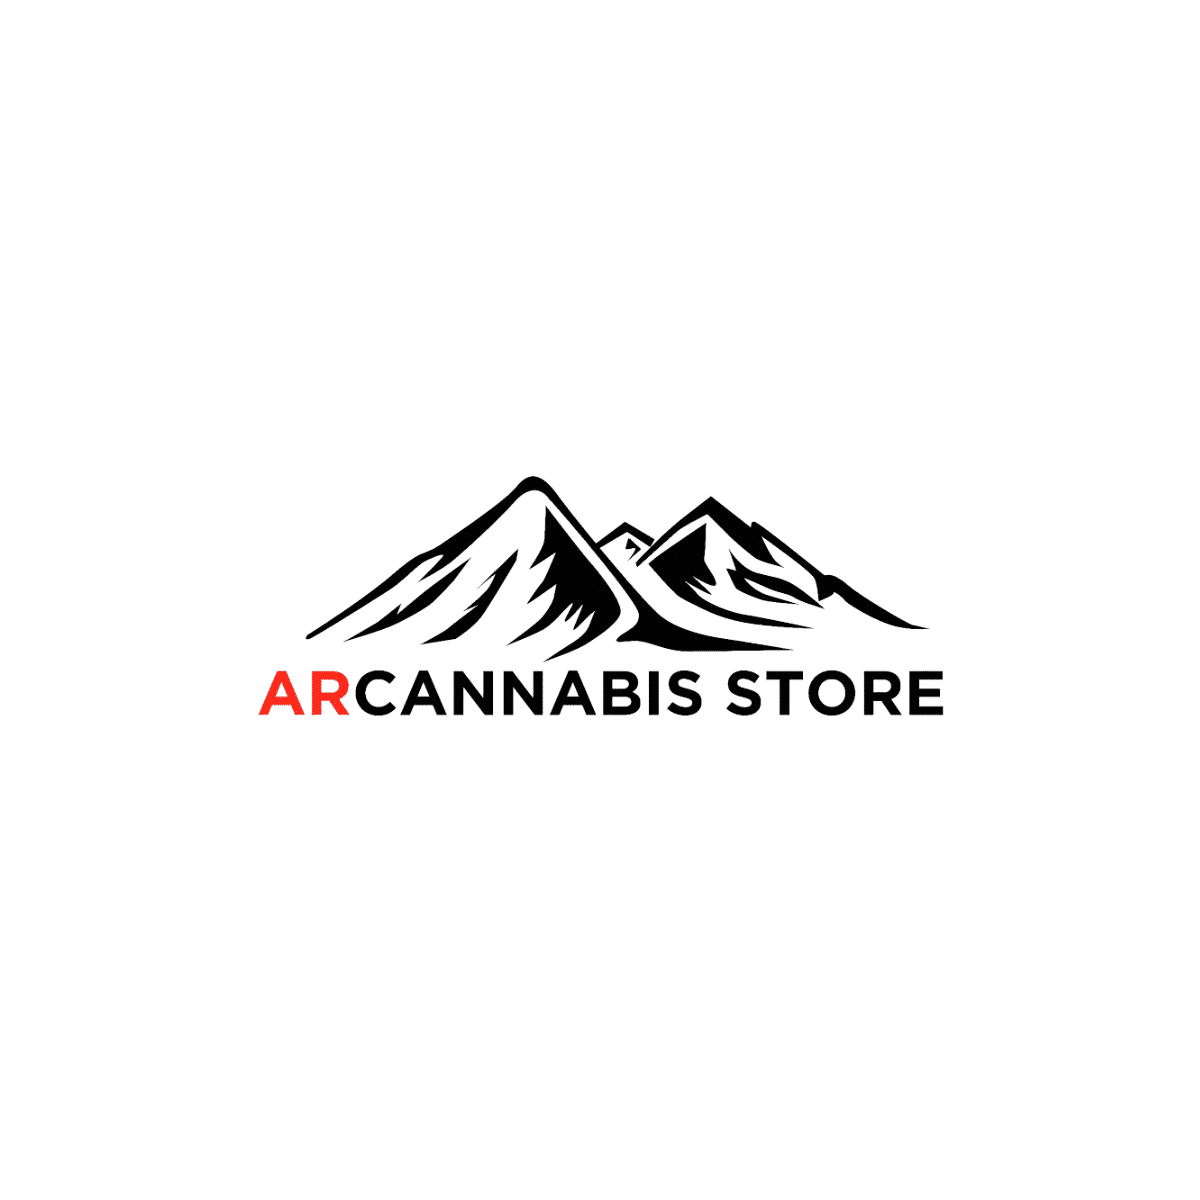 AR Cannabis Store - Cannabis thérapeutique